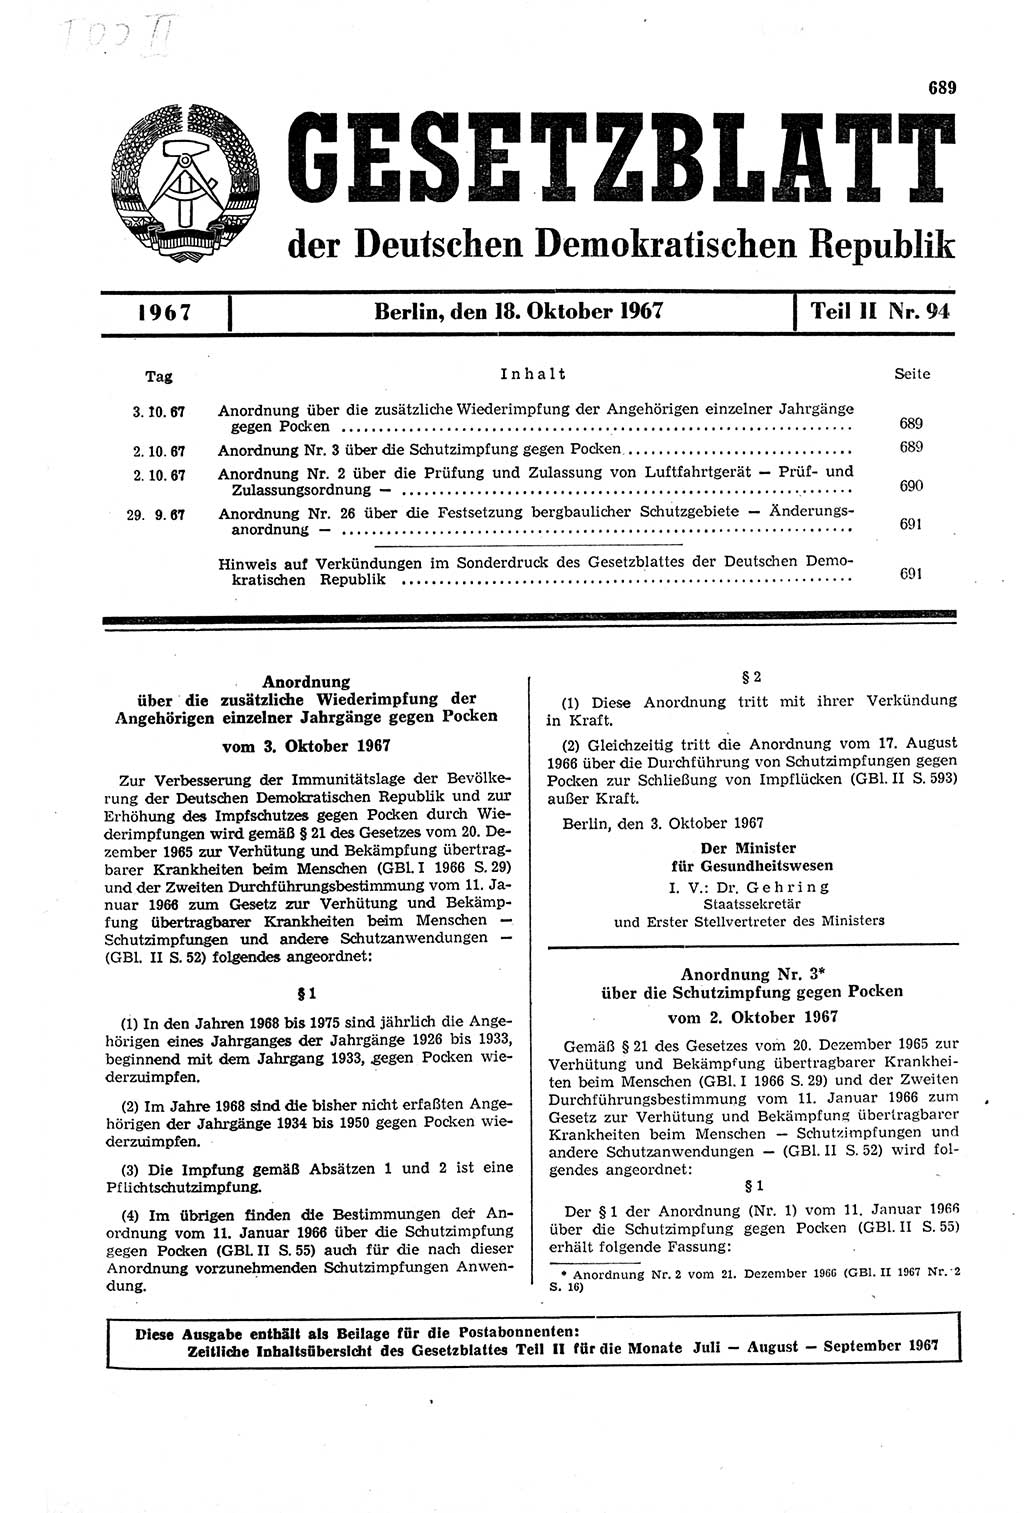 Gesetzblatt (GBl.) der Deutschen Demokratischen Republik (DDR) Teil ⅠⅠ 1967, Seite 689 (GBl. DDR ⅠⅠ 1967, S. 689)